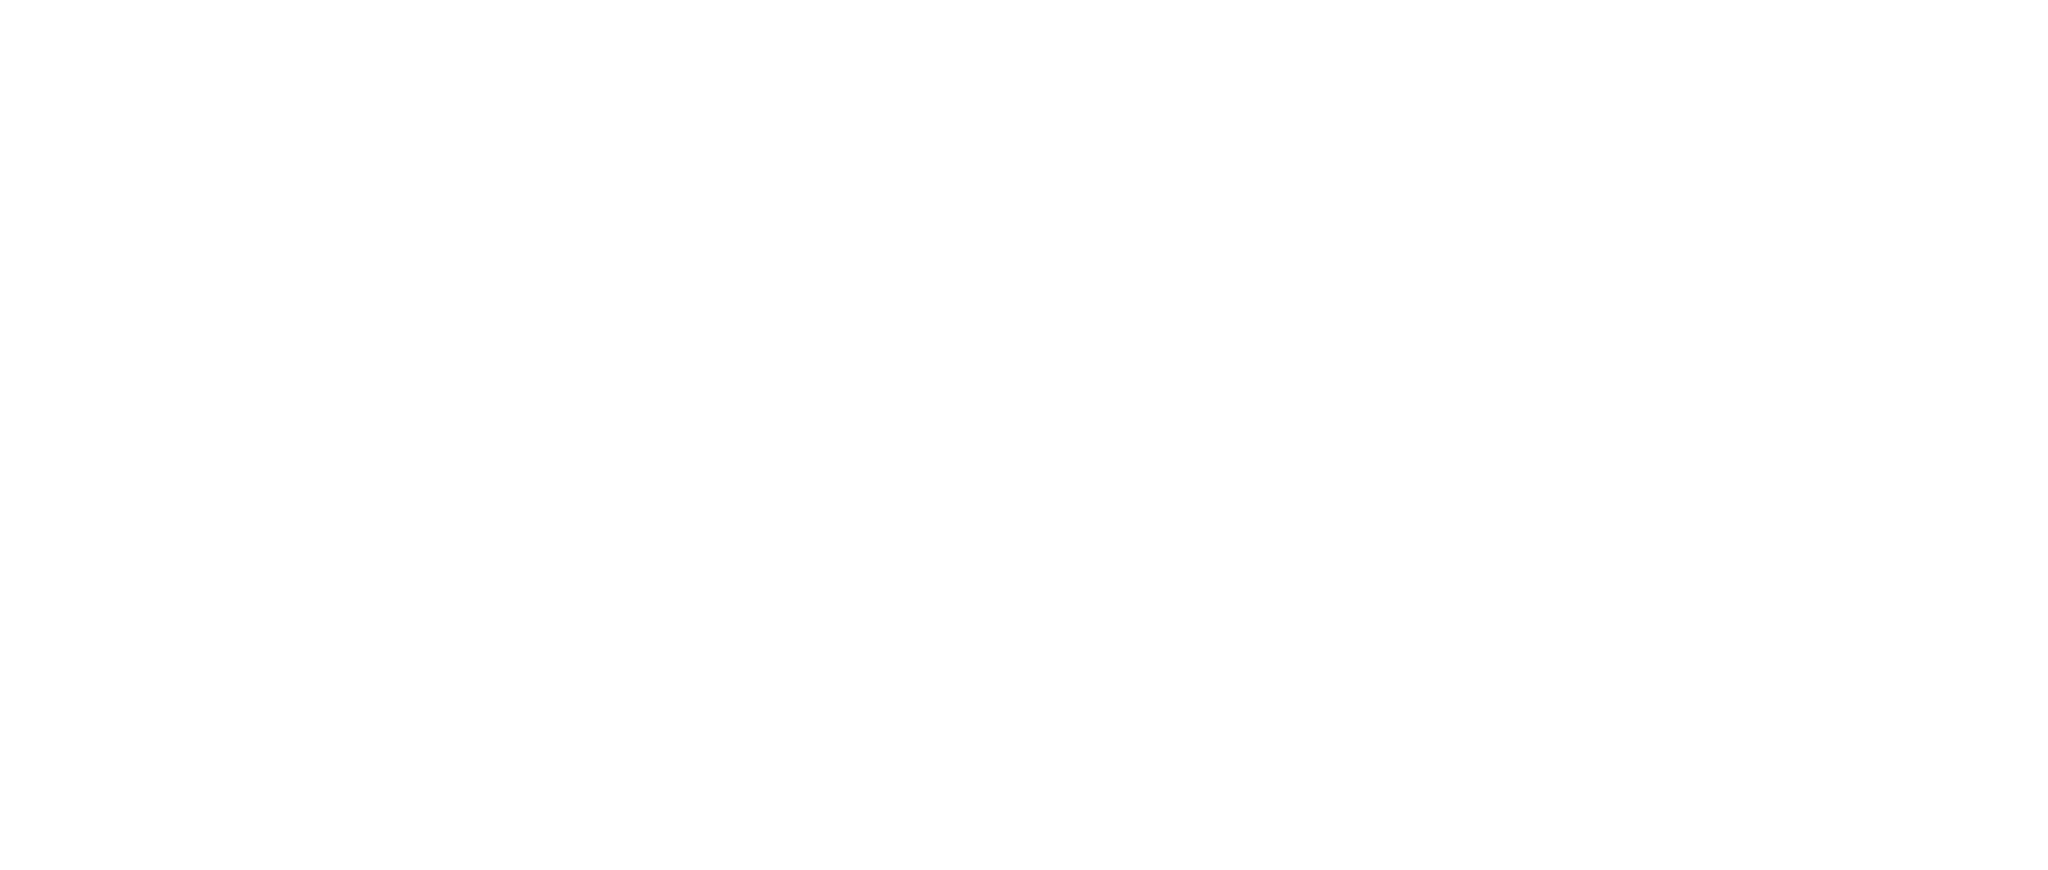 atp film studios logo